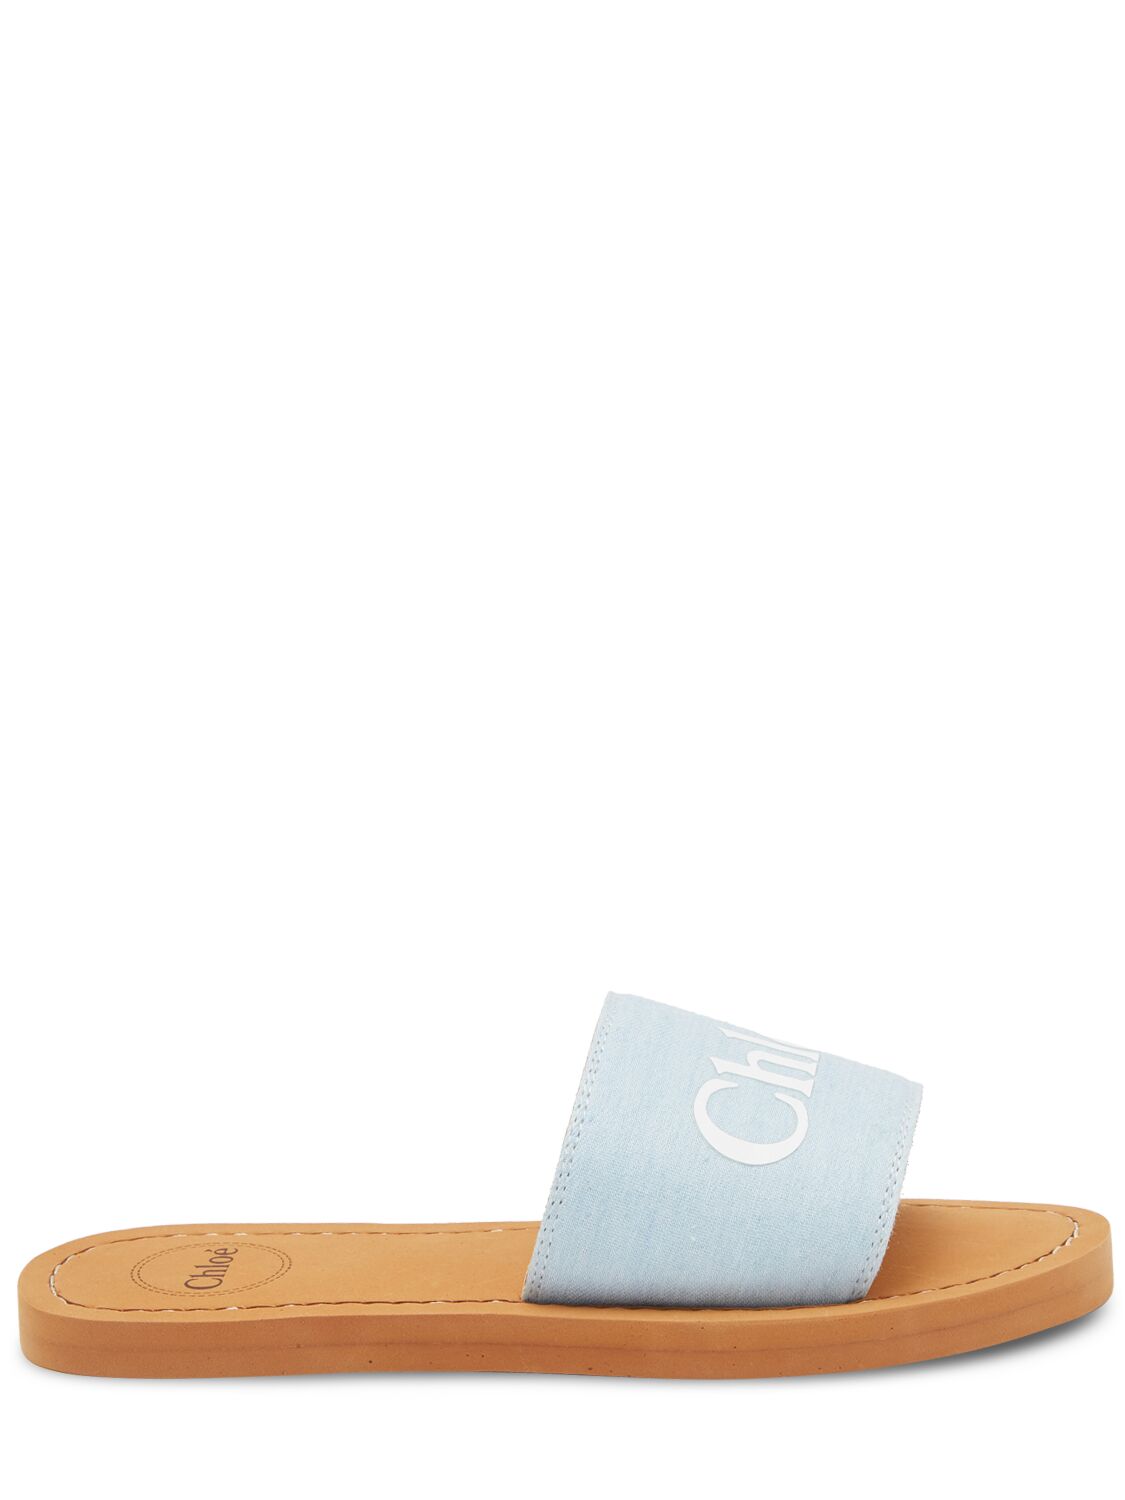 Image of Denim Slide Sandals